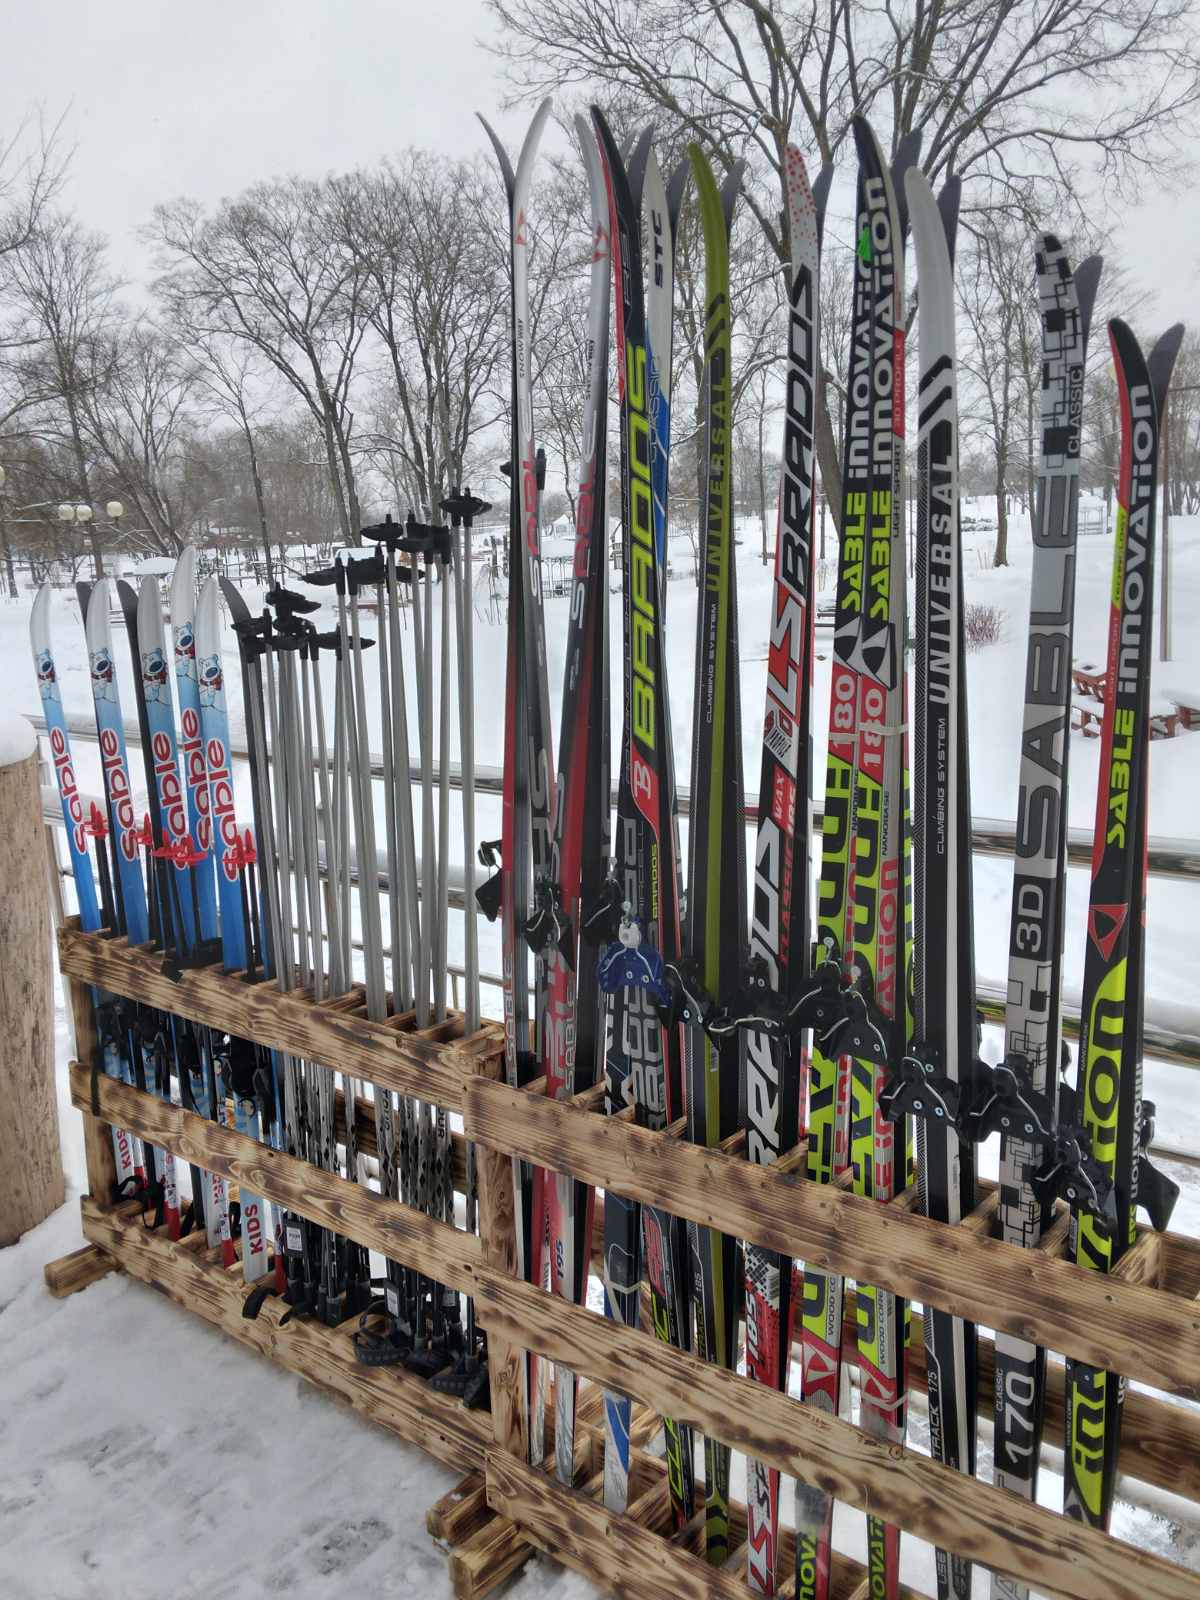 Предприятие «Могилевзеленстрой» открыло в парке Подниколье пункт проката лыж для детей и взрослых.